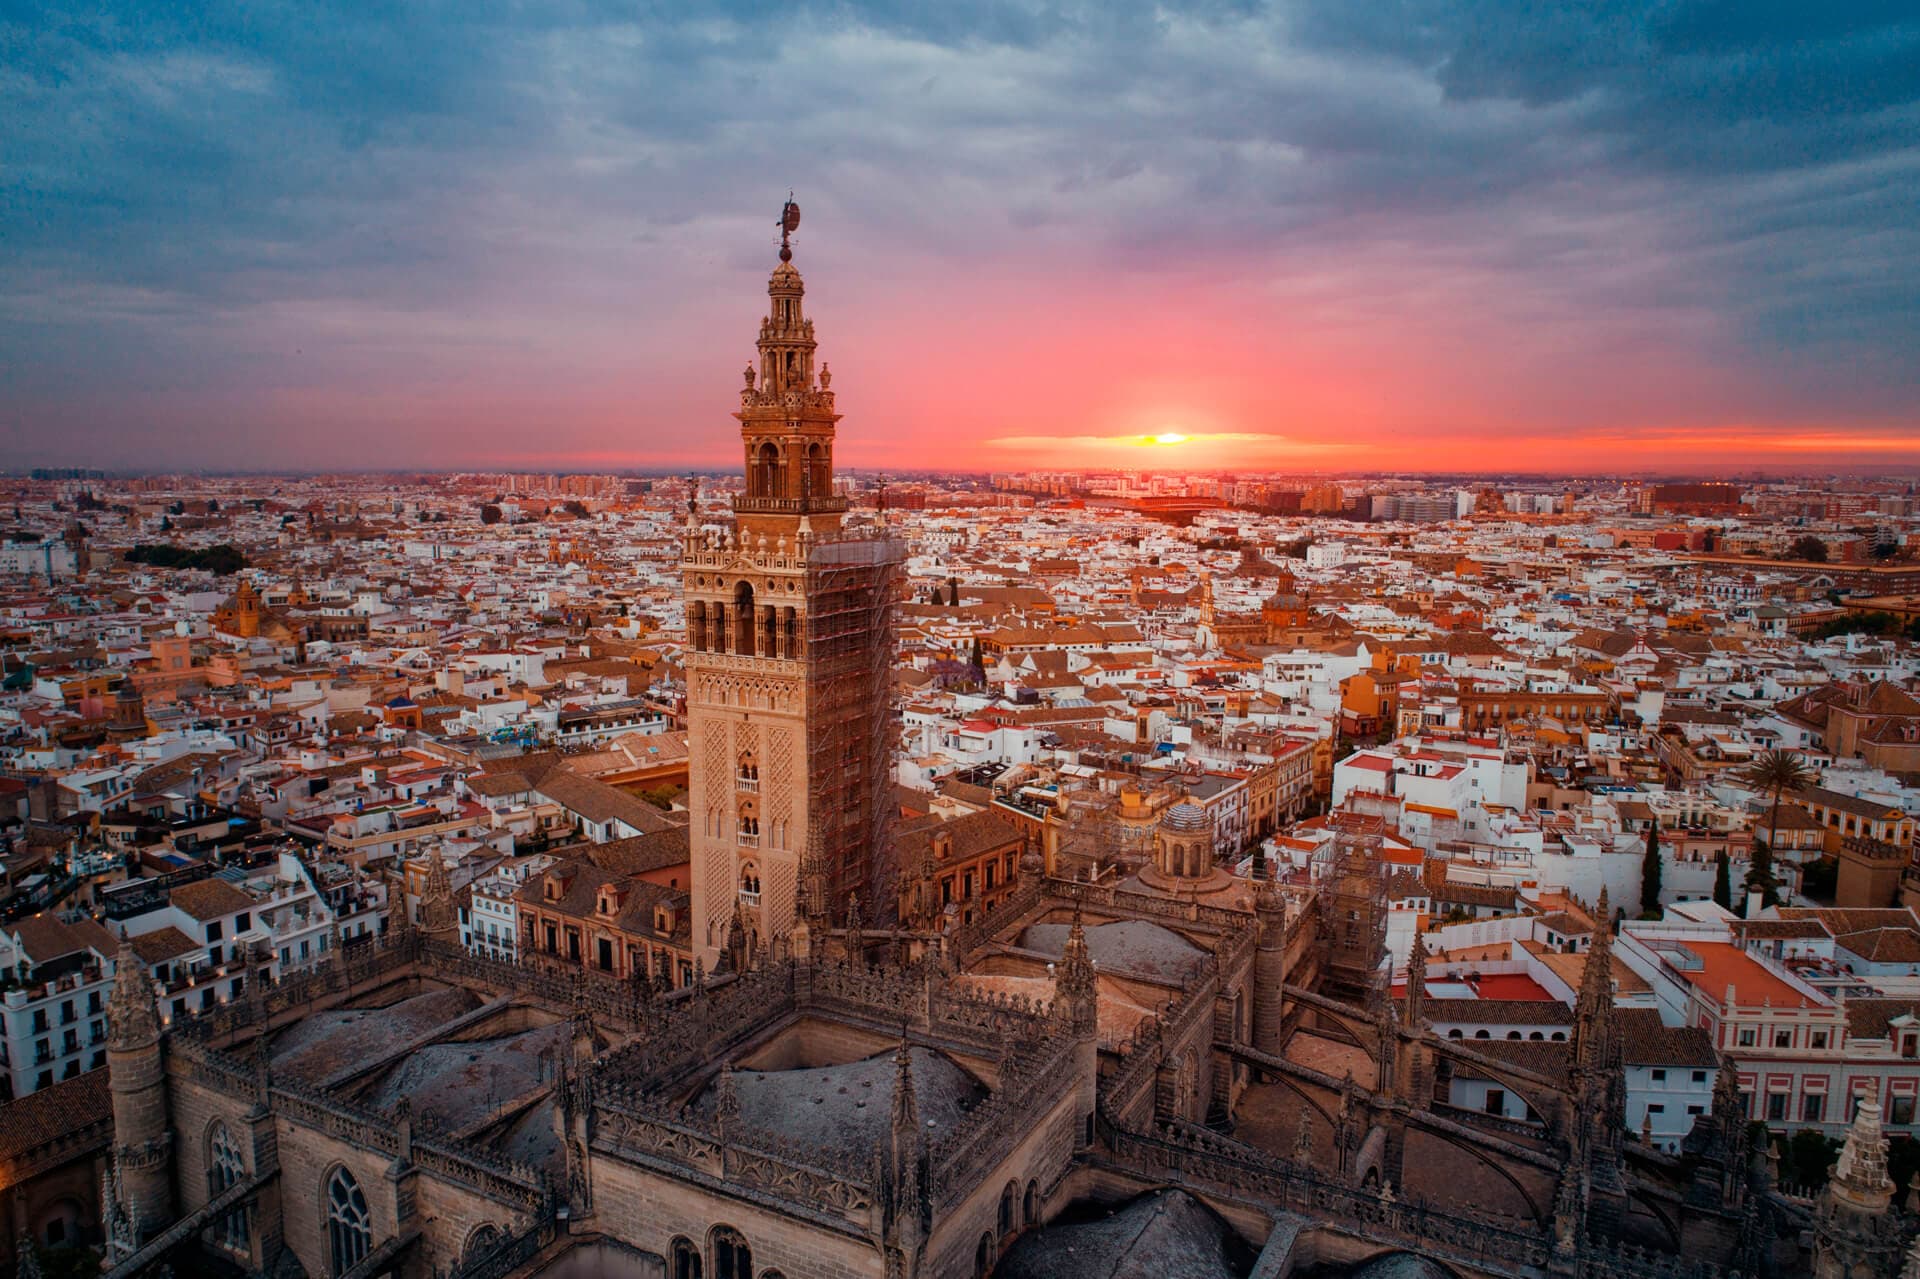 Desalojo de okupas en Sevilla